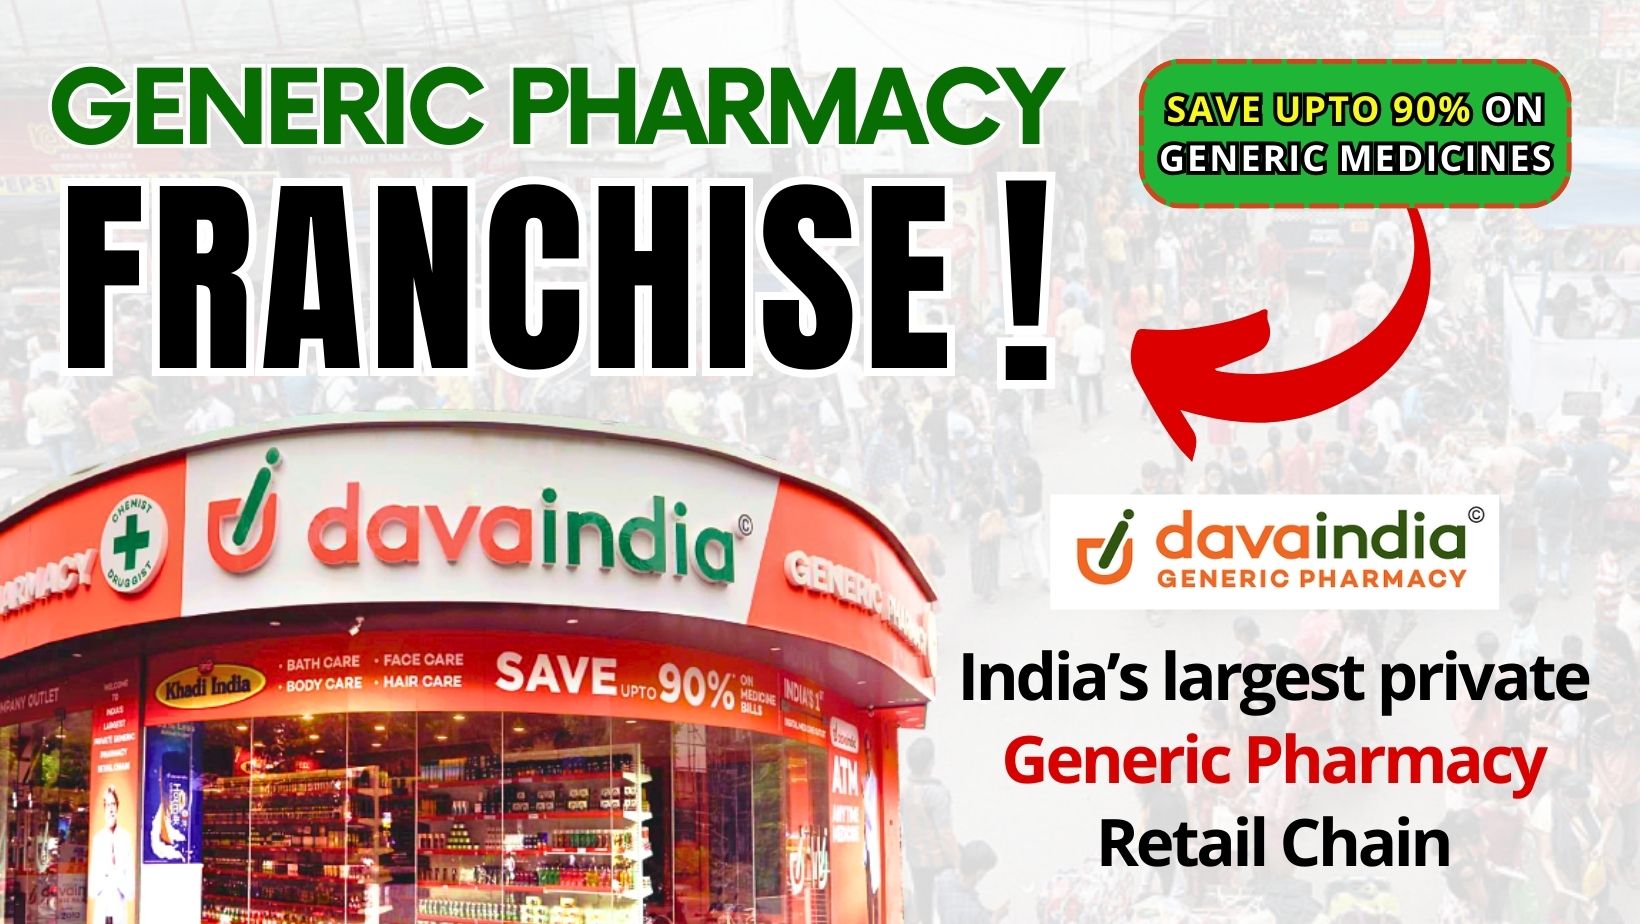 Dava India Generic Pharmacy Franchise